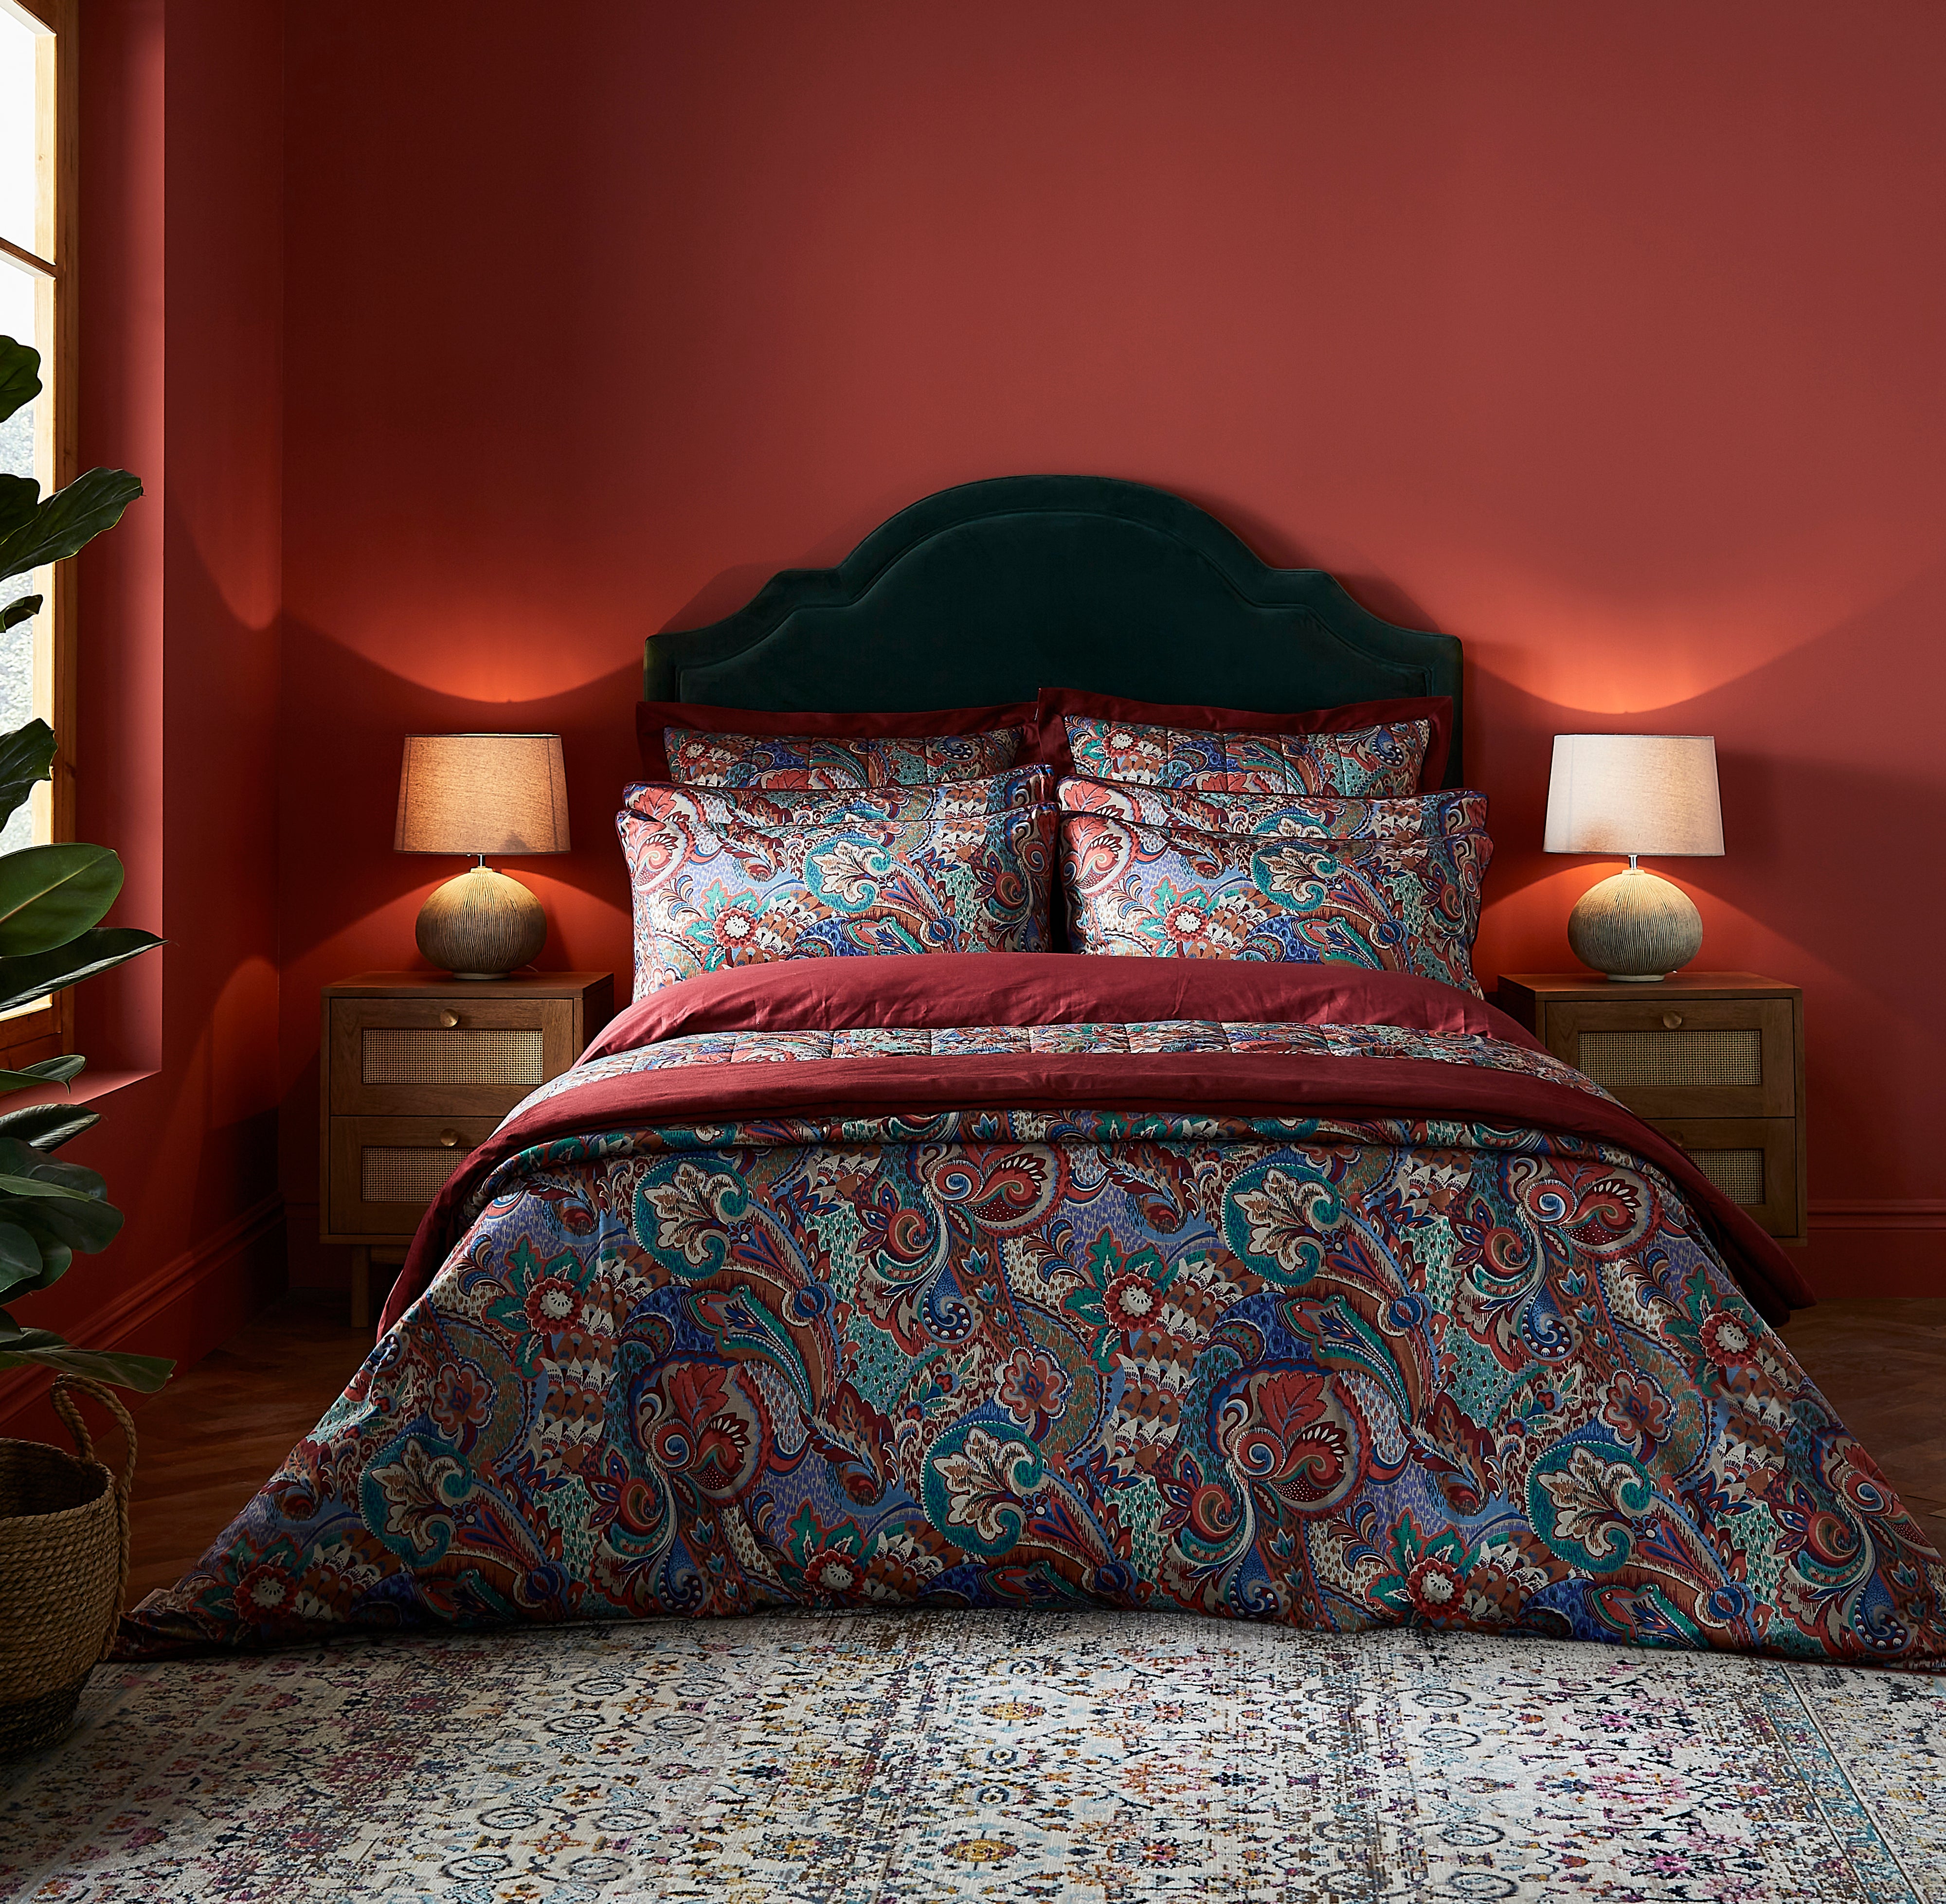 Dorma Persian Jewel Bedspread Red